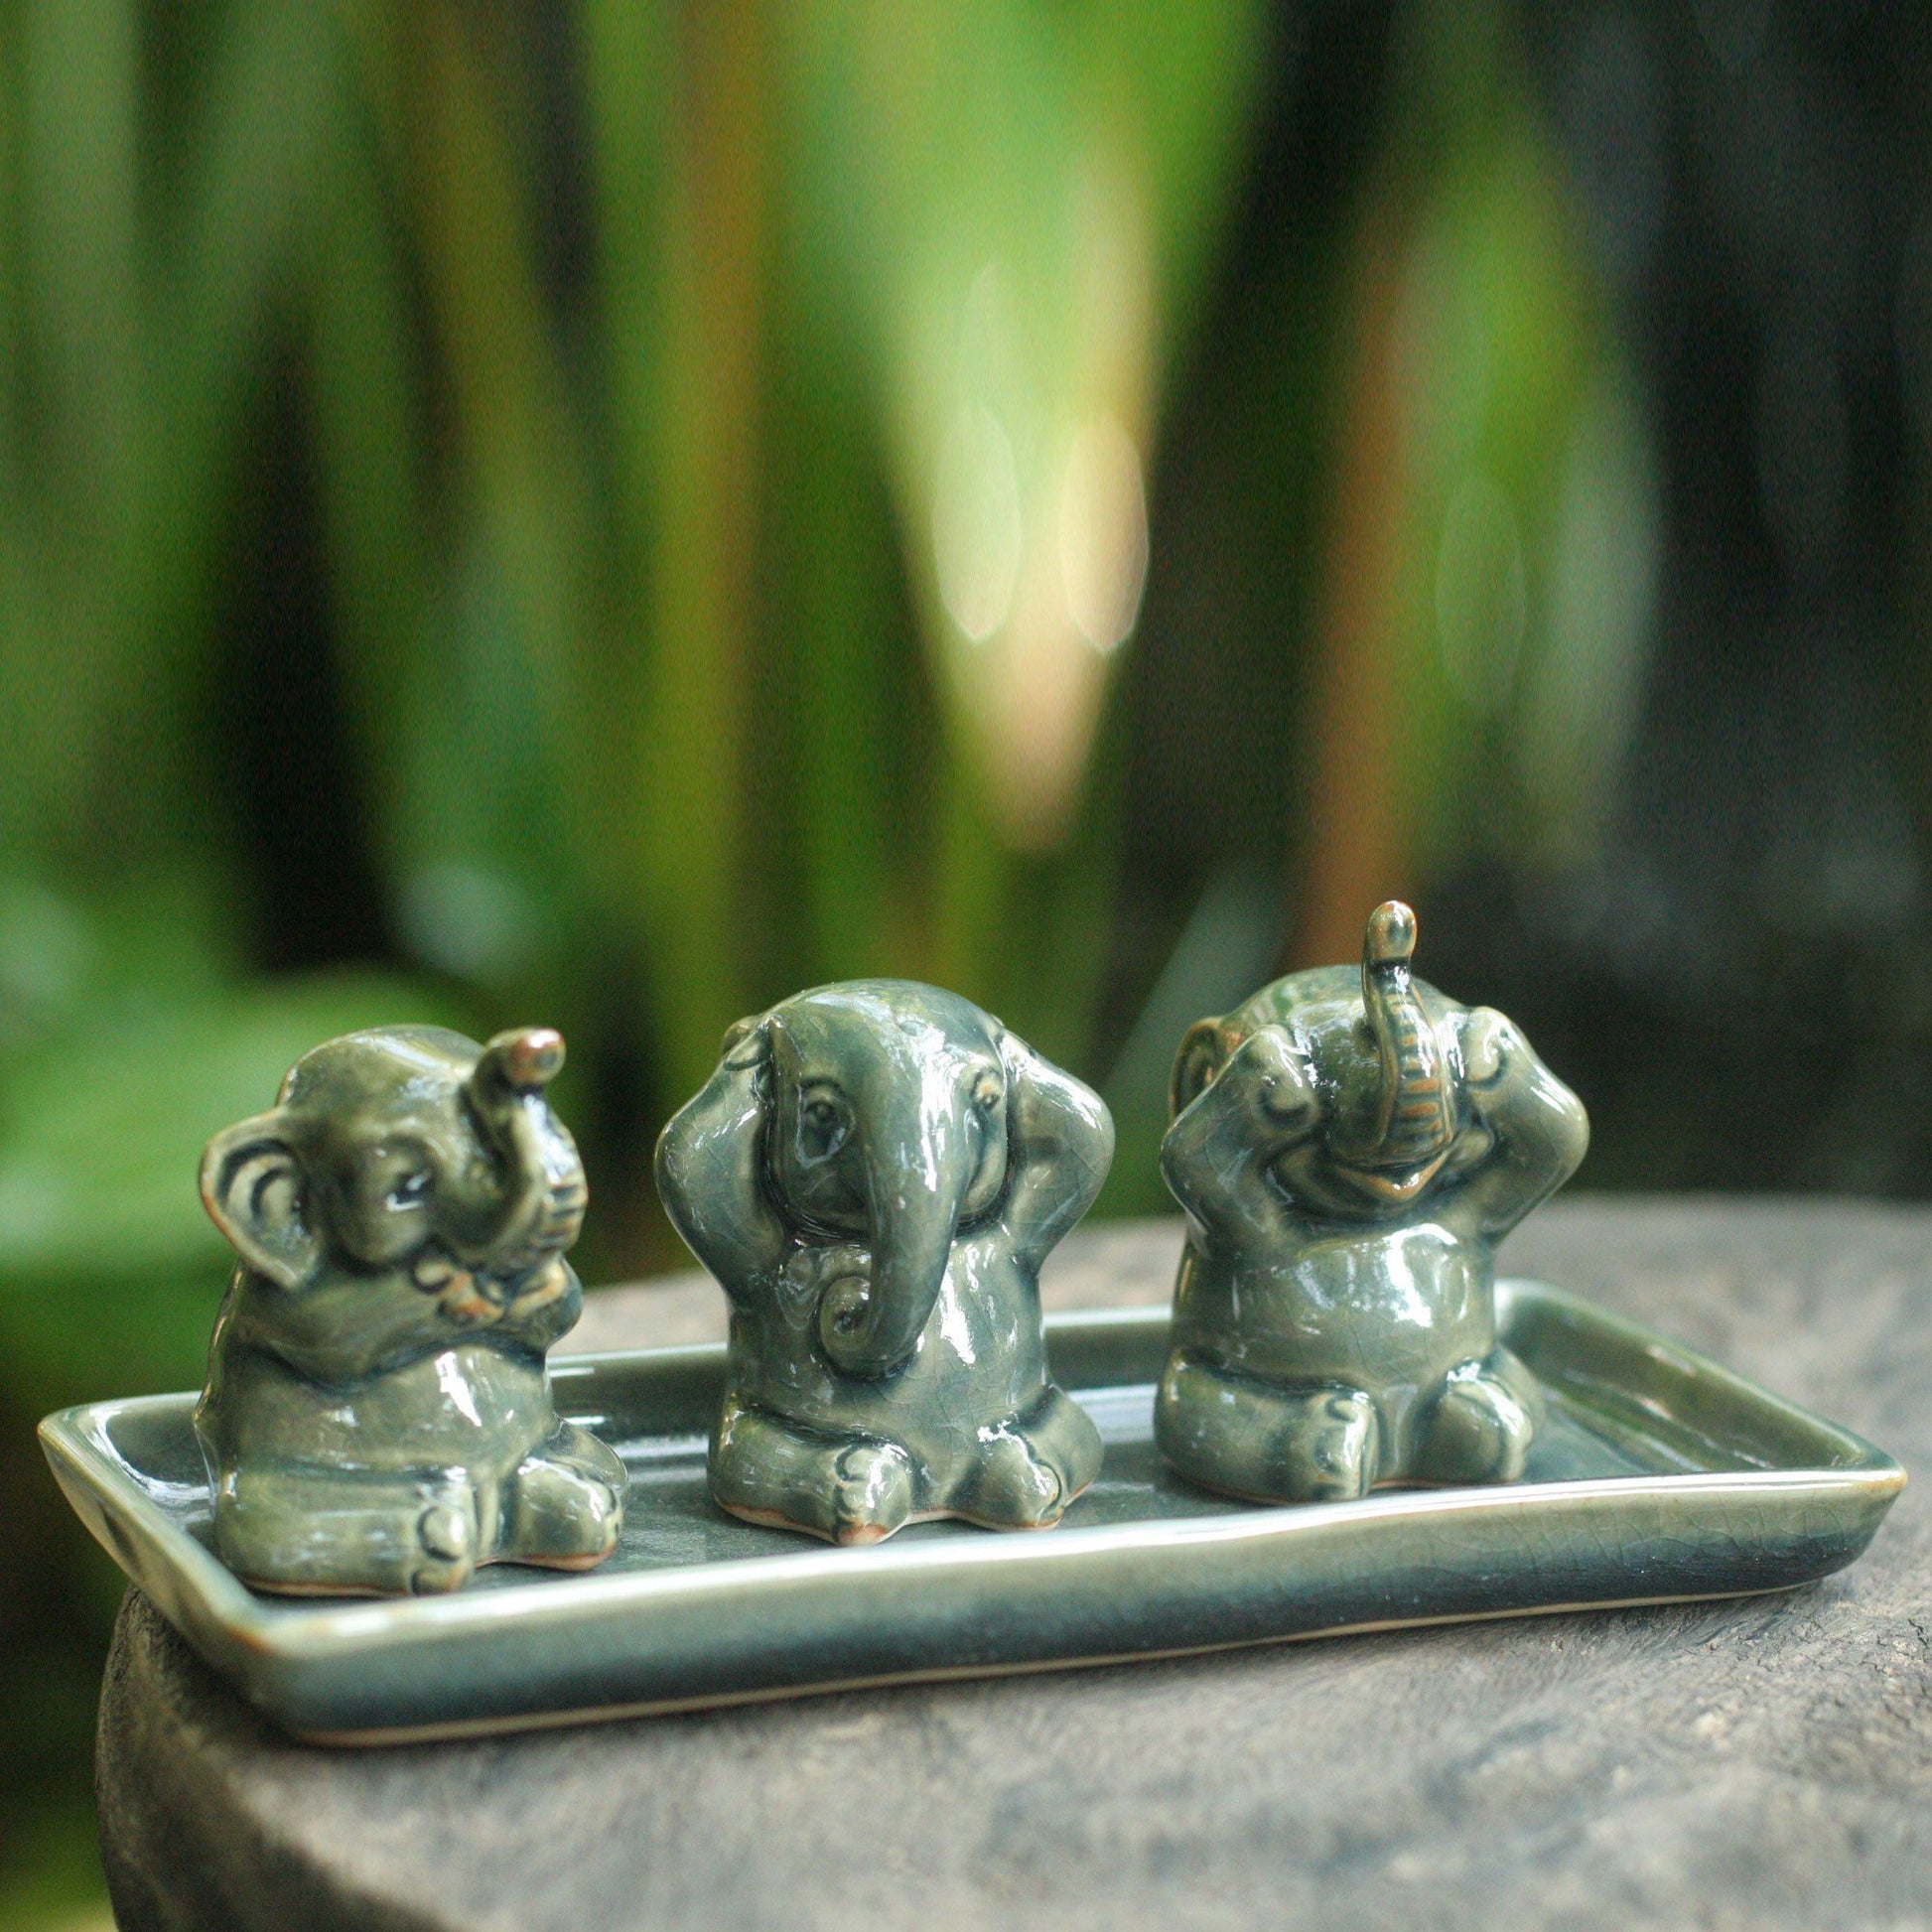 NOVICA - Green Celadon Elephant Figurine Sculpture